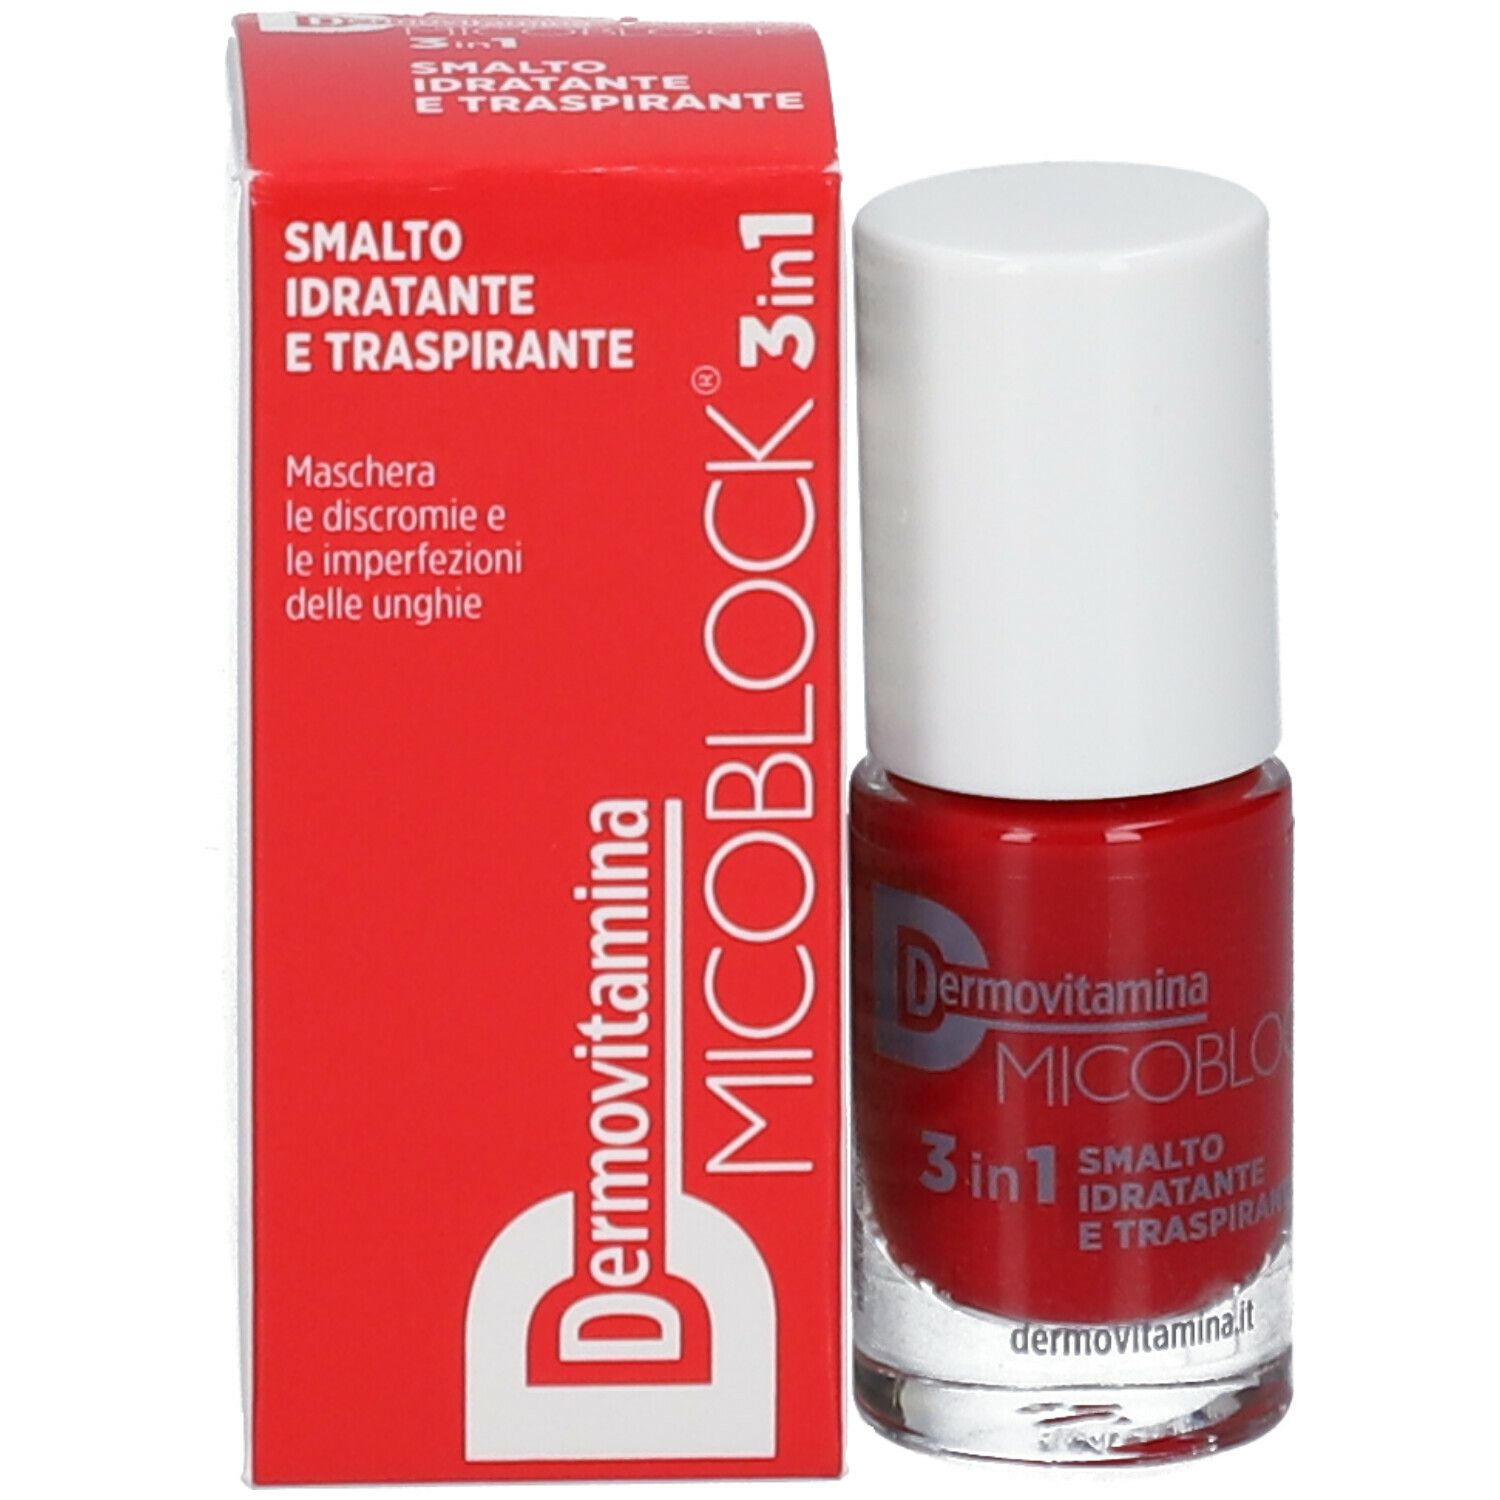 Dermovitamina Micoblock® 3 in 1 Smalto Idratante e Traspirante Rosso